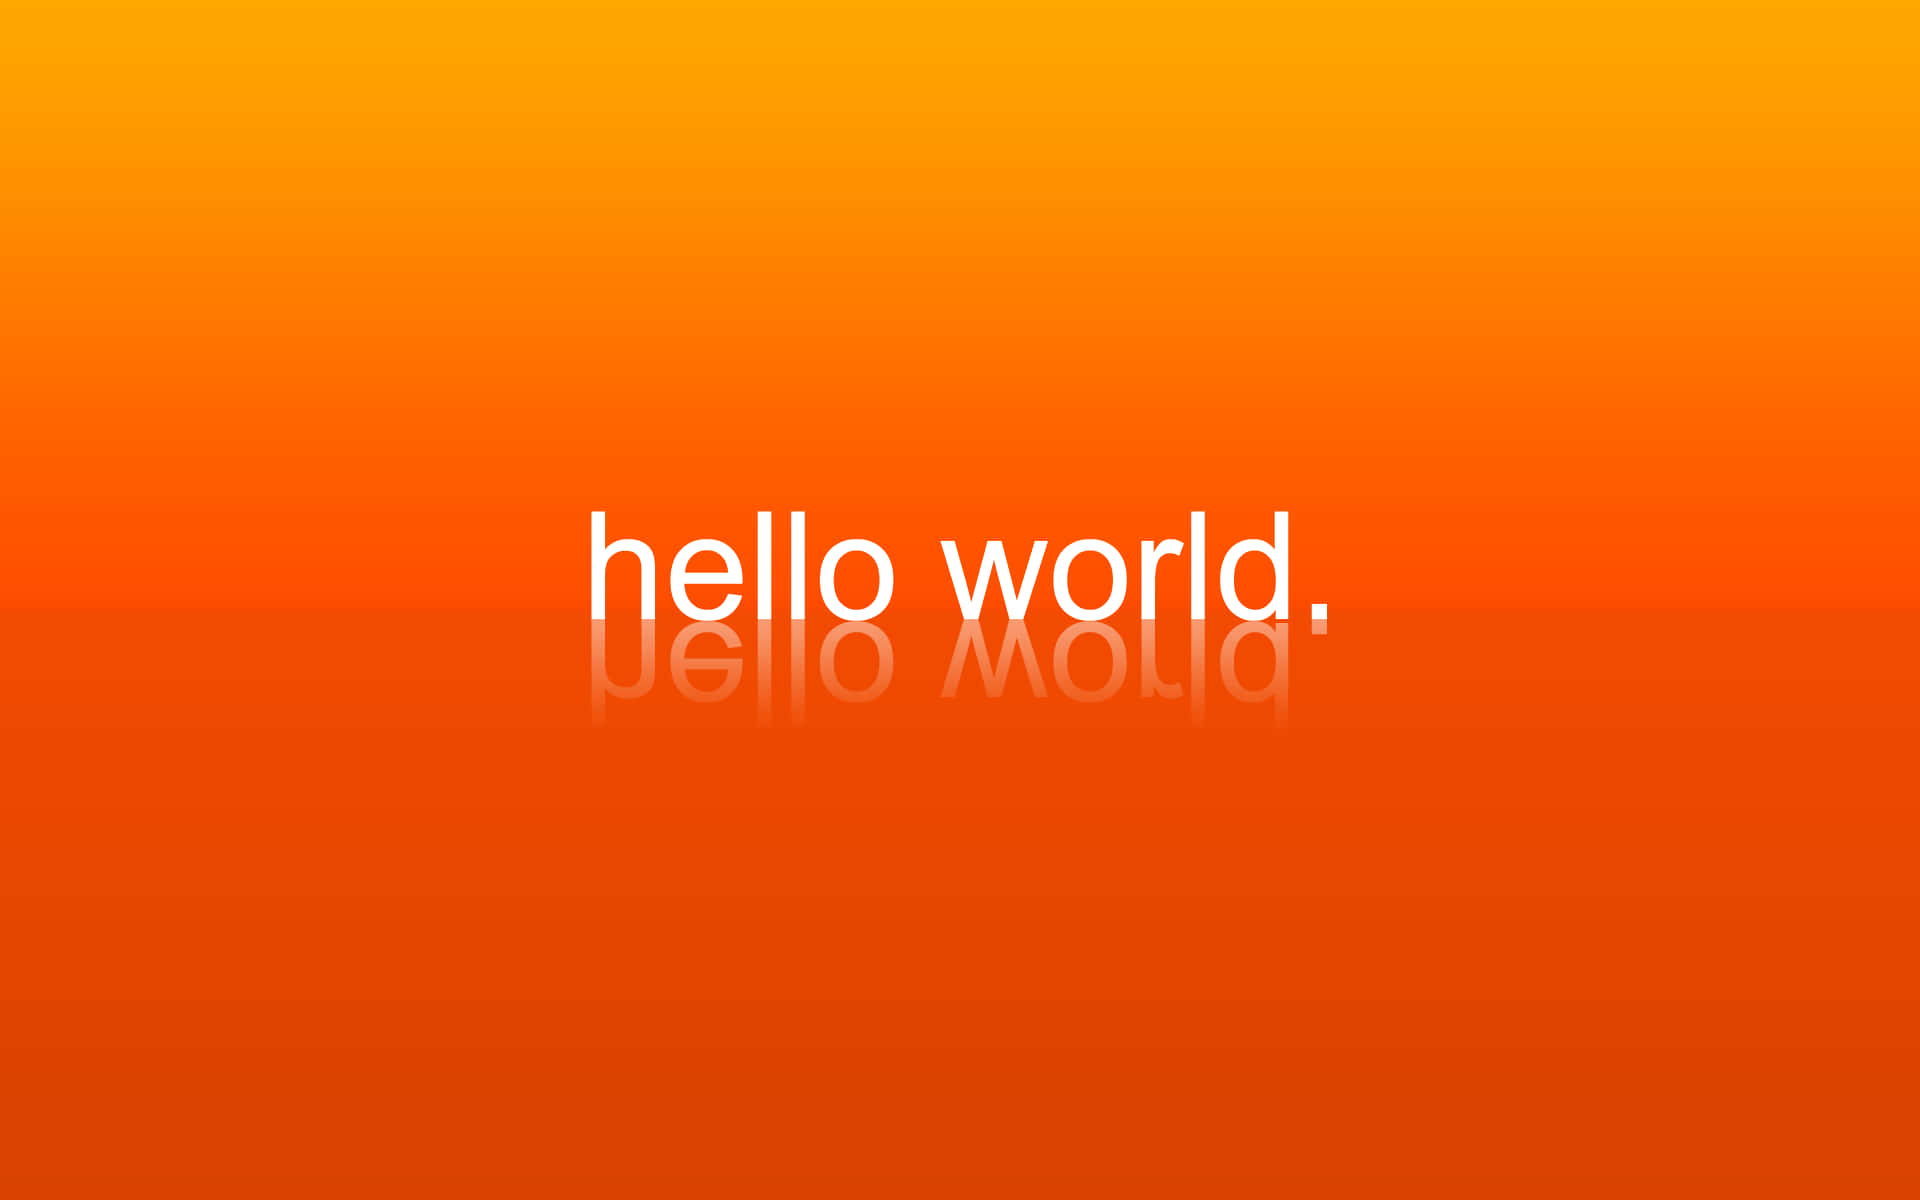 Programaciónhd Hola Mundo Estética Naranja Fondo de pantalla